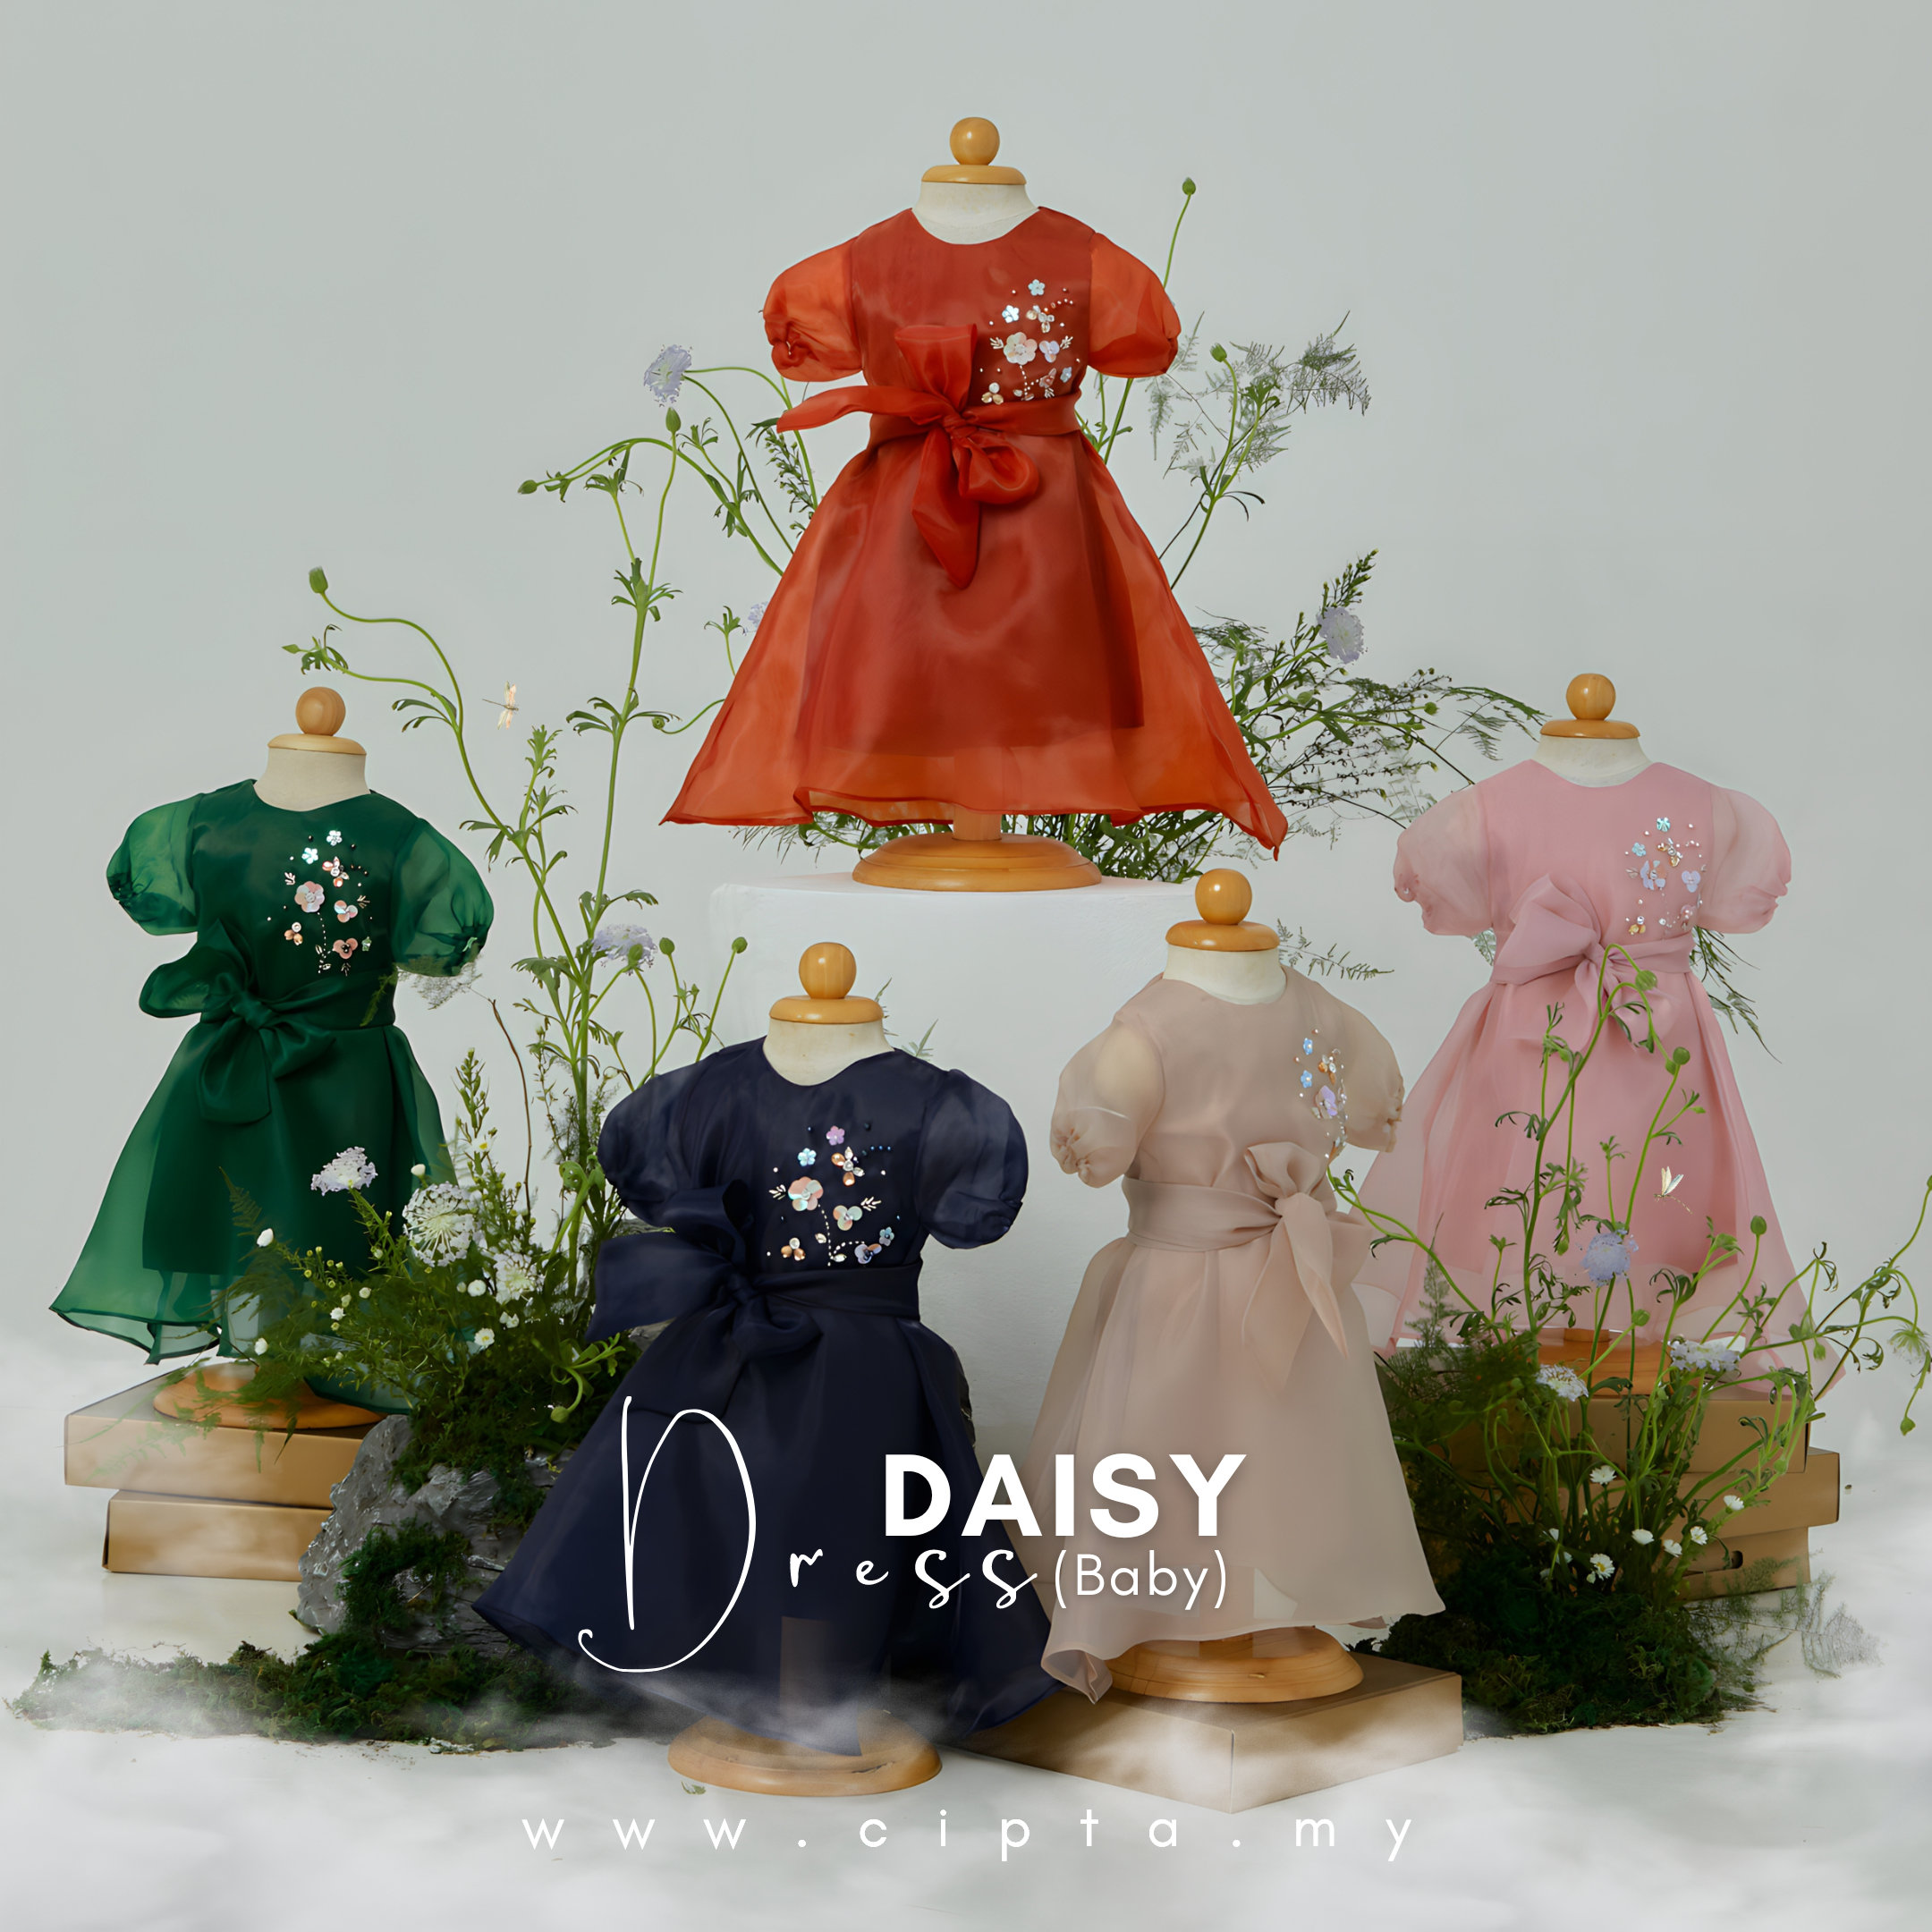 Daisy Dress (Baby)